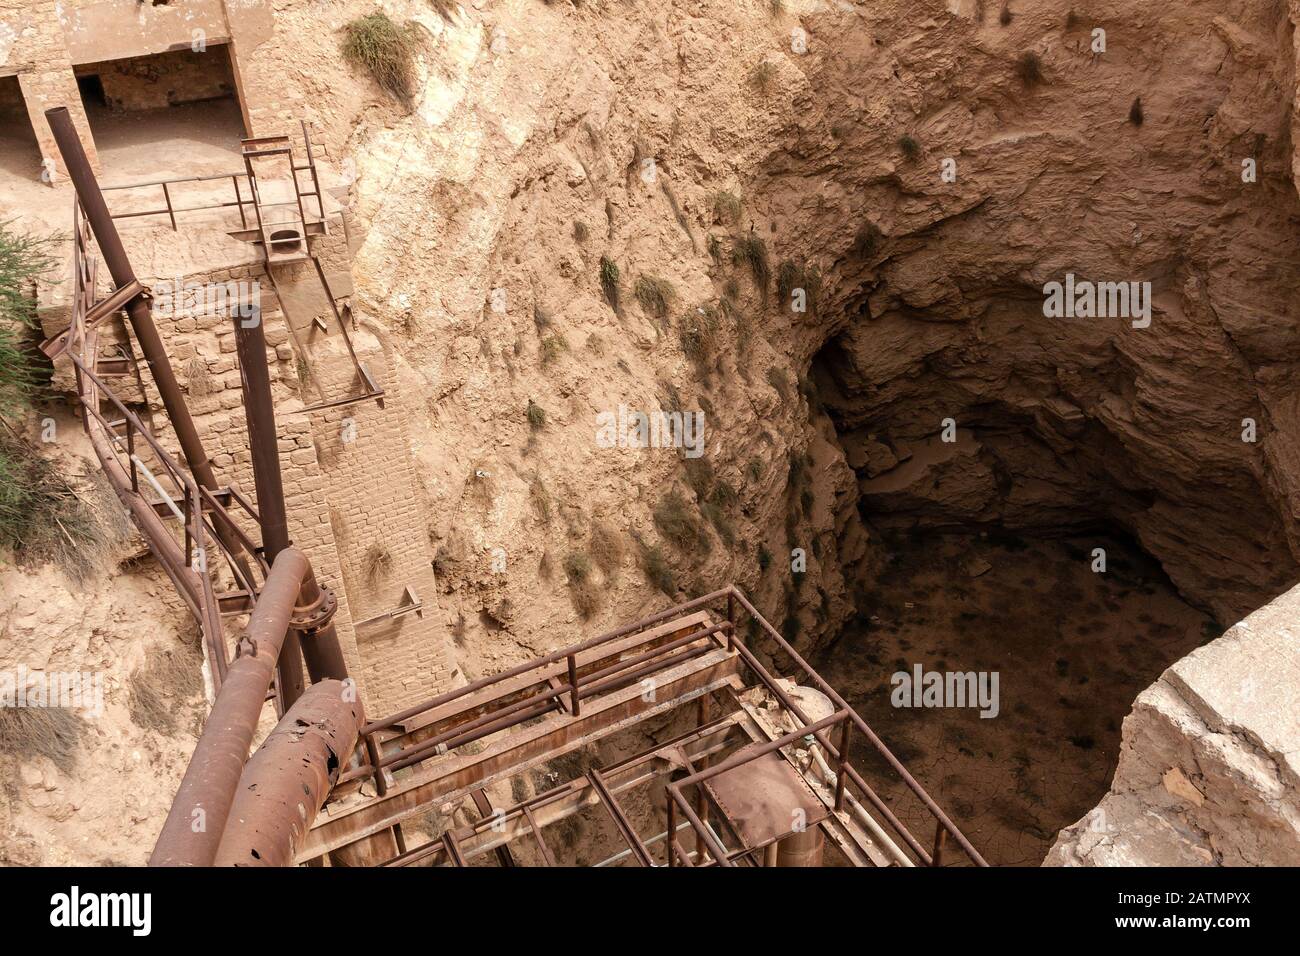 Das Wassersammelreservoir an der verlassenen und verfallenen Wasseraufbereitungs- und -Kläranlage in Khafs Daghrah, Saudi-Arabien Stockfoto